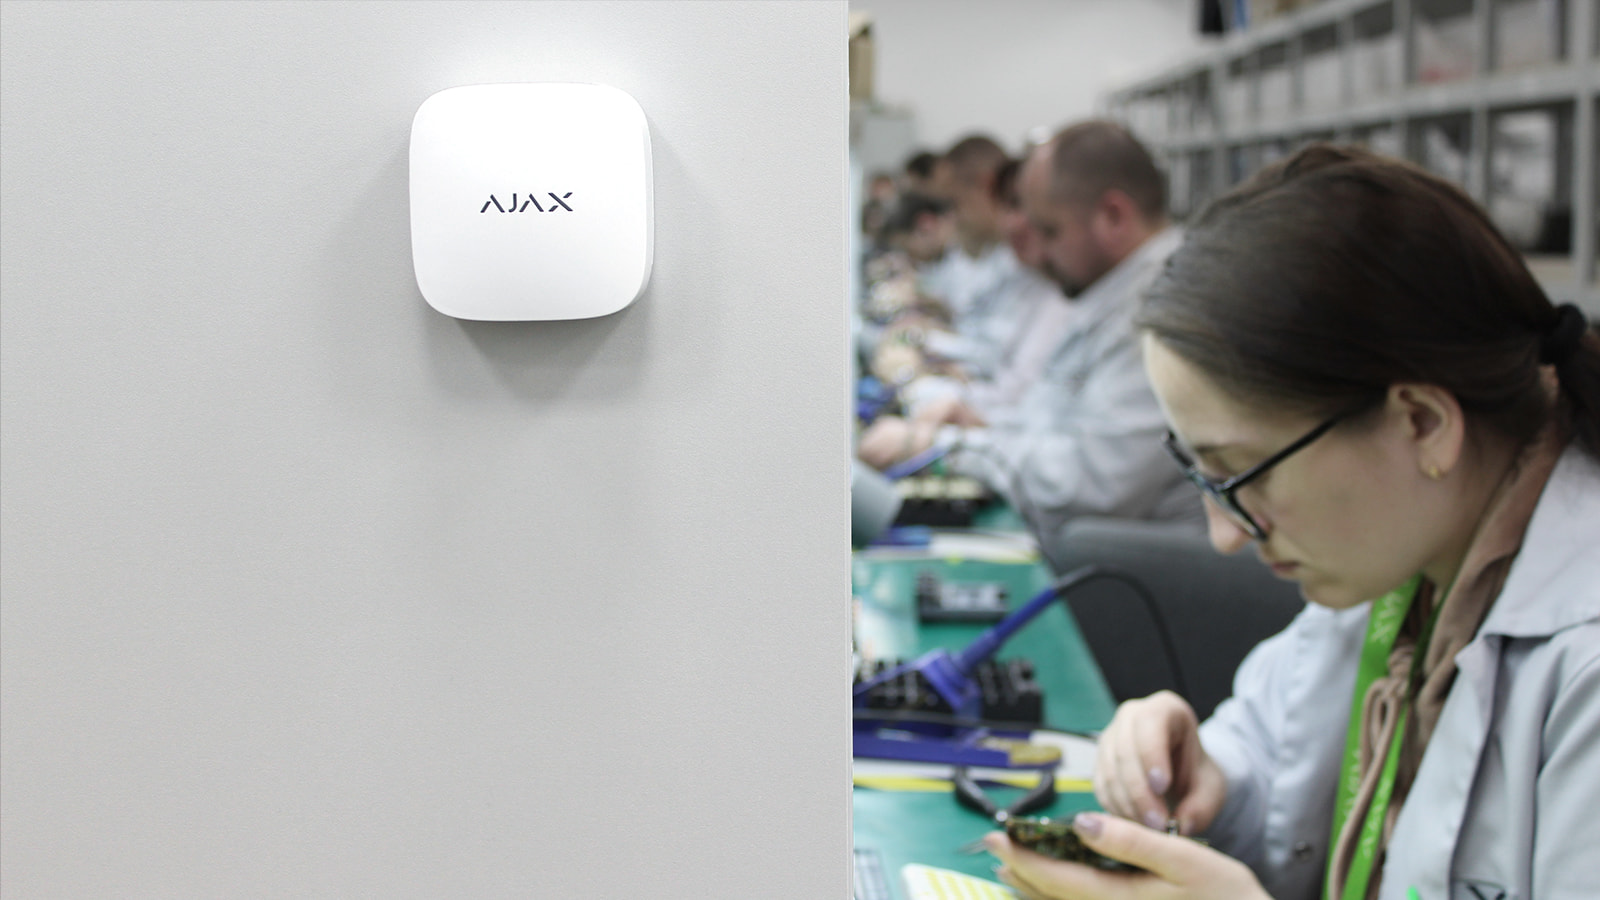 Hệ thống Ajax đã tiết kiệm được hơn 1 triệu USD như thế nào khi cung cấp khả năng kiểm soát thông gió với LifeQuality